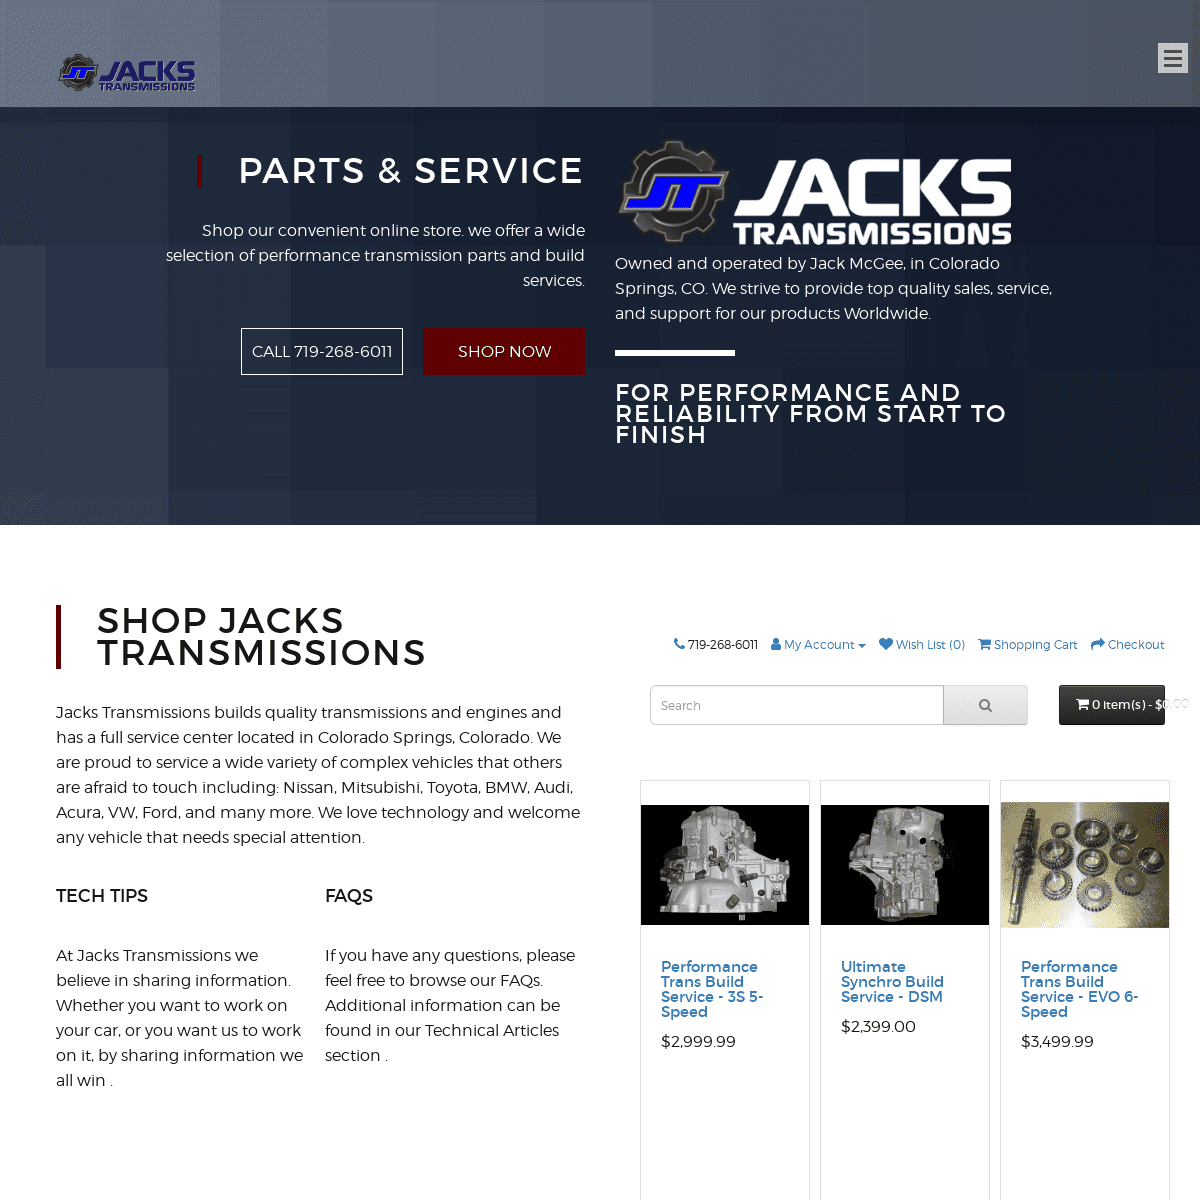 A complete backup of jackstransmissions.com